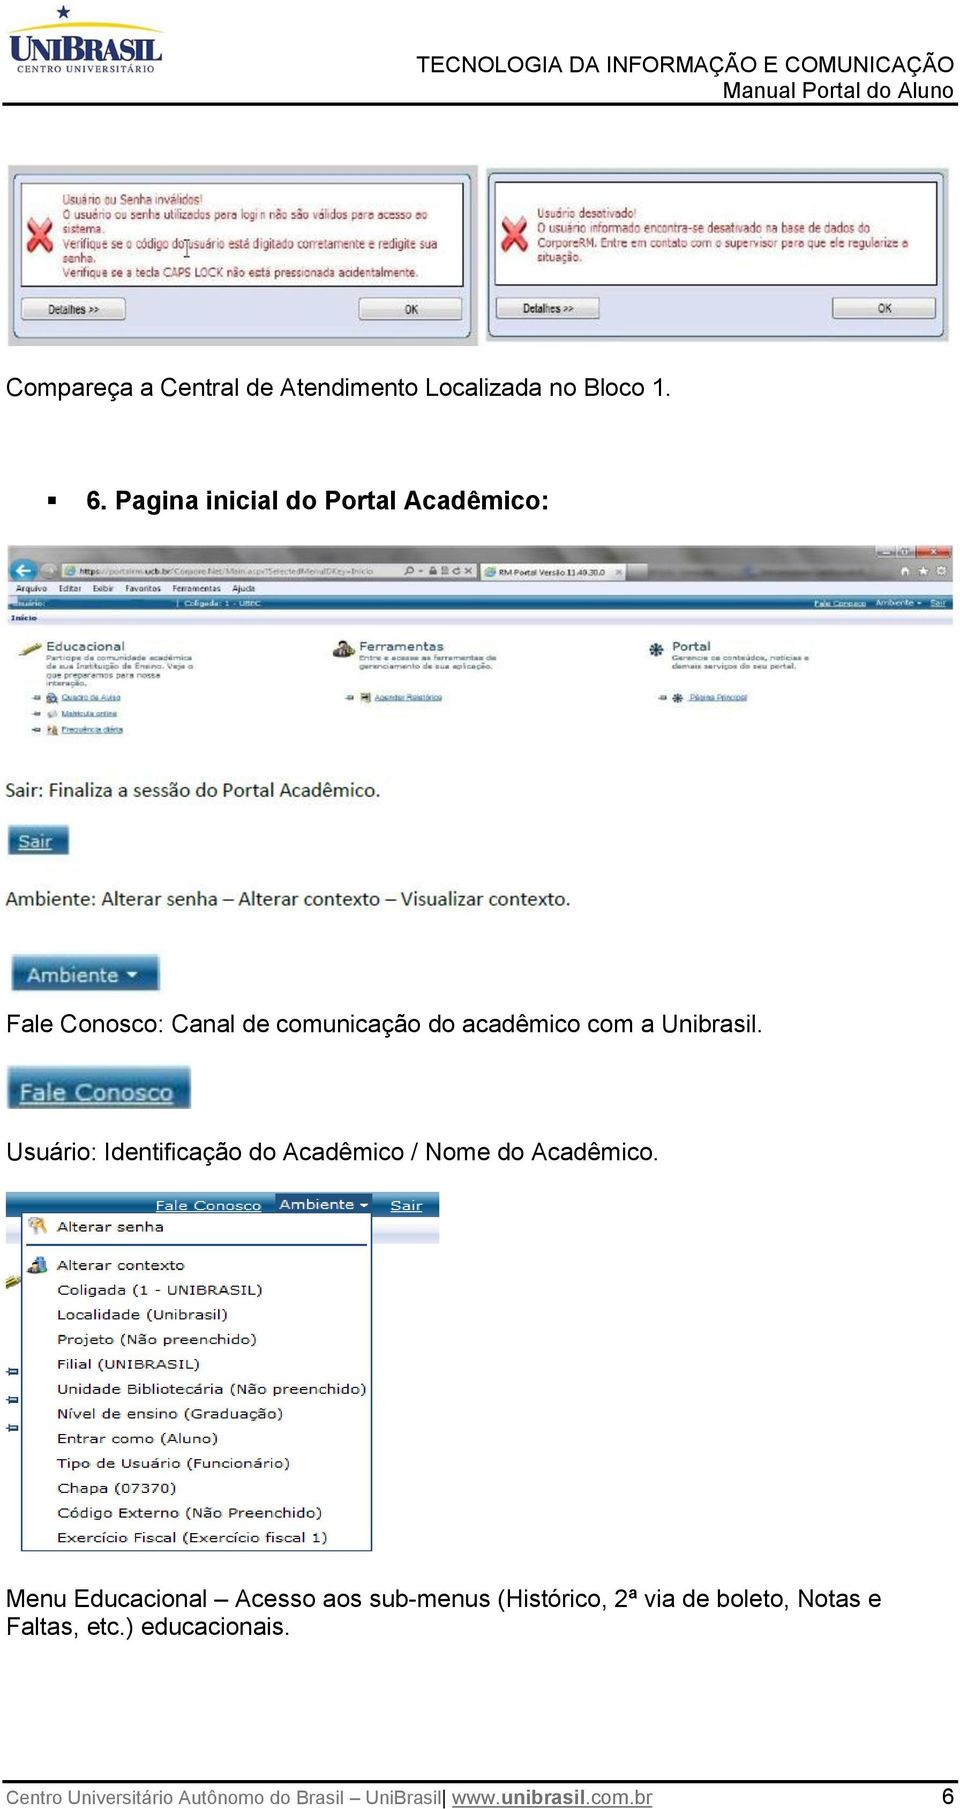 Unibrasil. Usuário: Identificação do Acadêmico / Nome do Acadêmico.